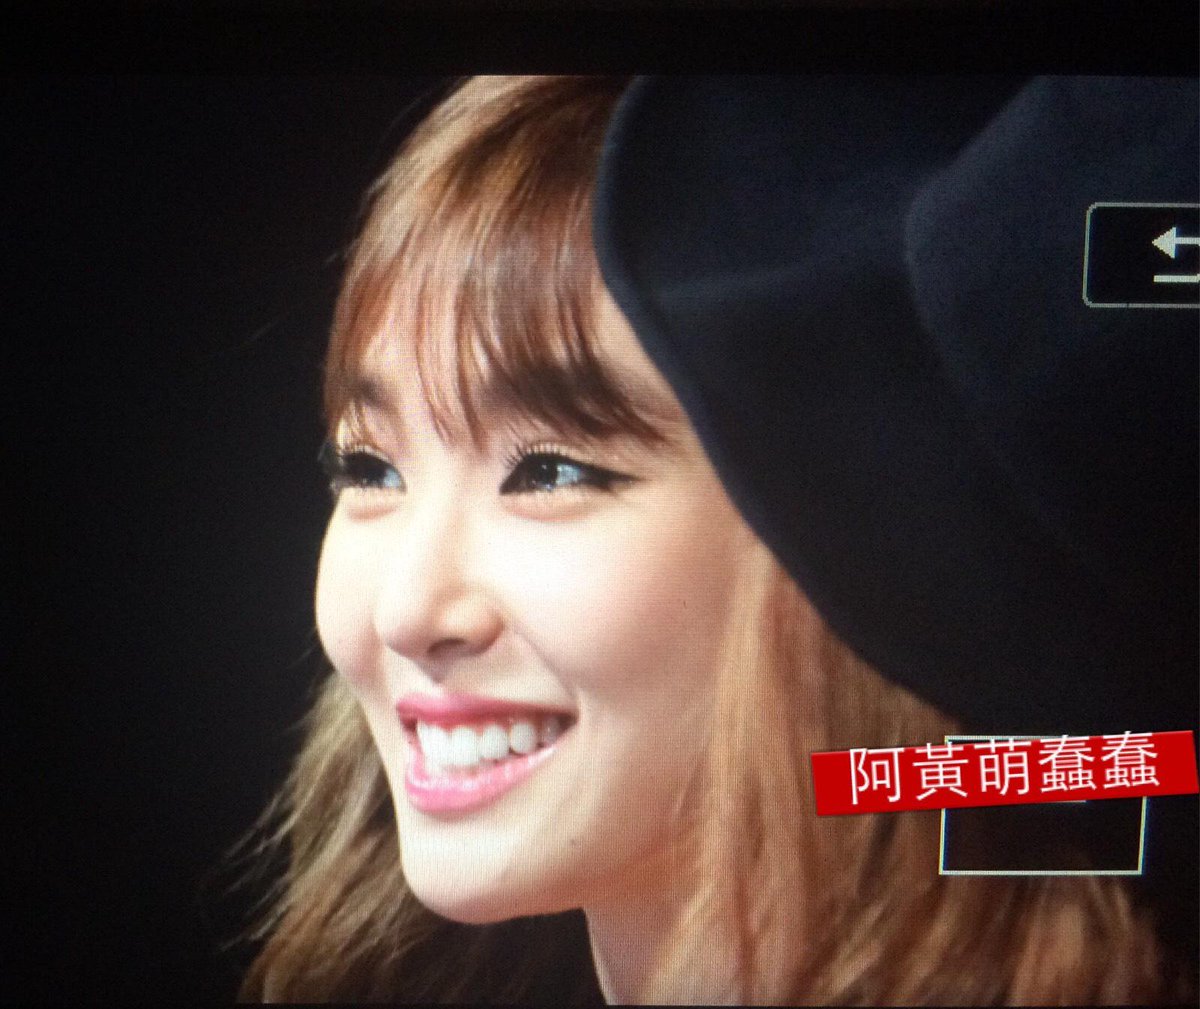 [PIC][02-12-2014]Tiffany khởi hành đi Hồng Kông để tham dự "2014 Mnet Asian Music Awards" vào tối nay B3-eraSCcAAZQSS